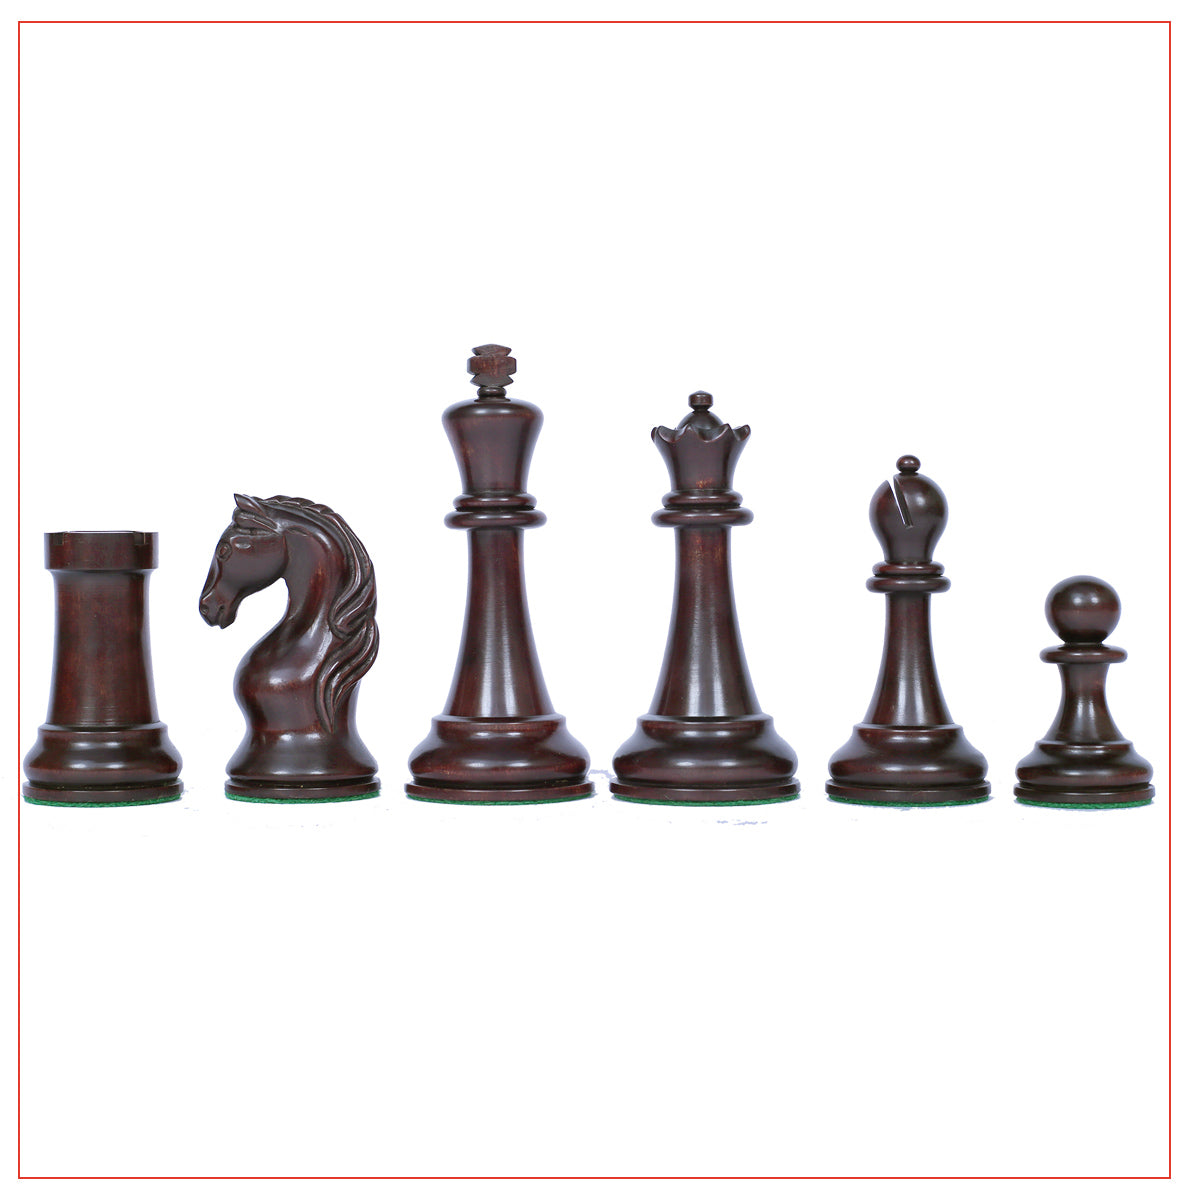 Piatigorsky 1865 Reproduction Staunton 4.5" Chess Pieces